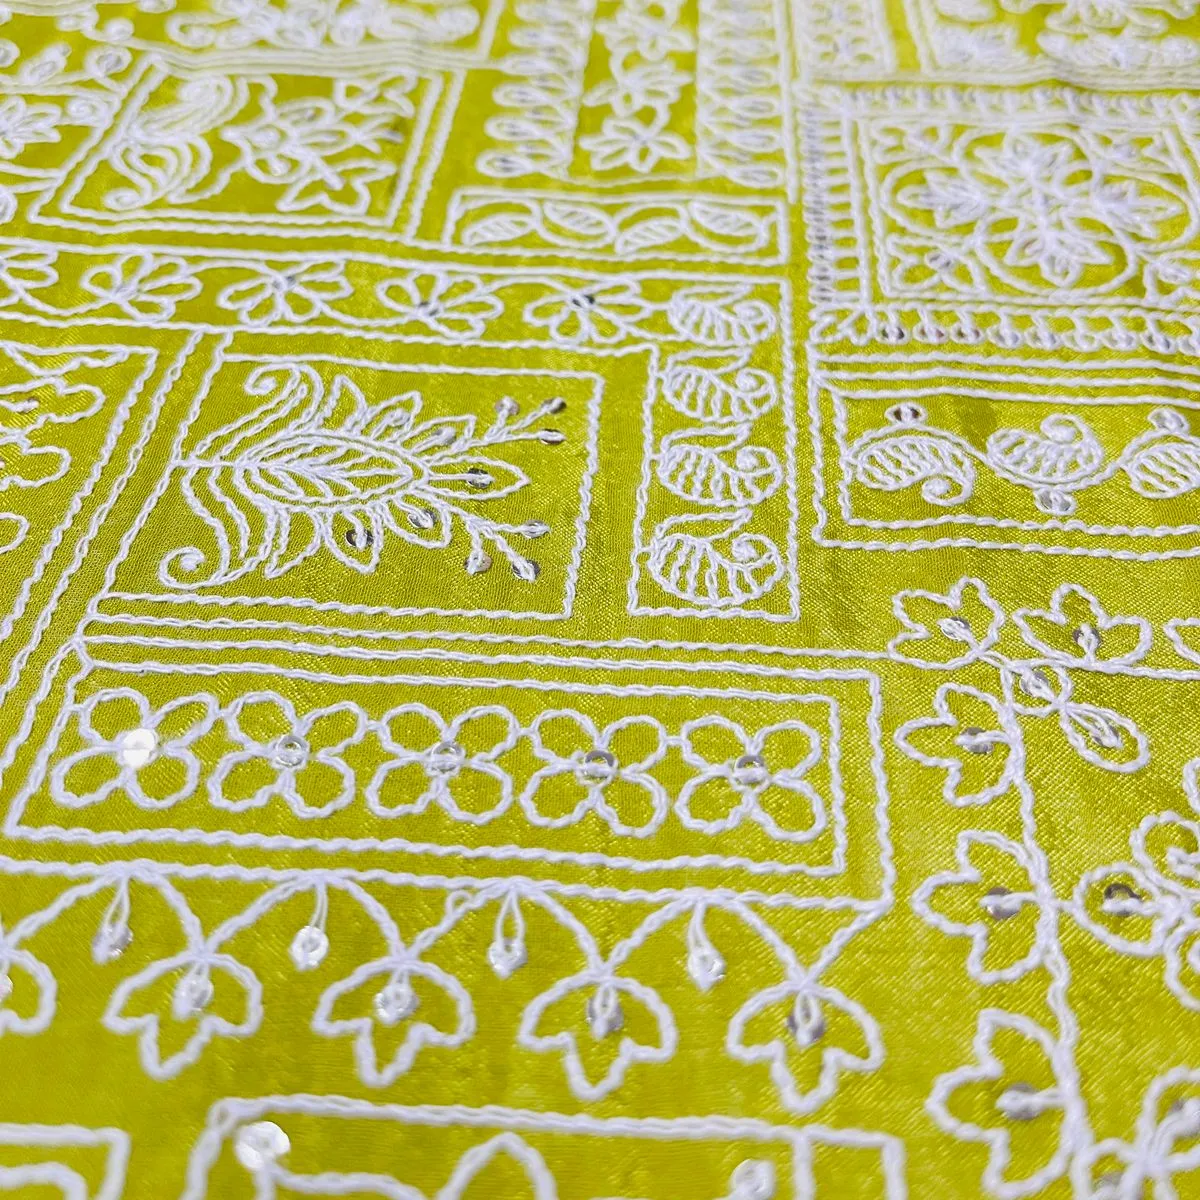 最高品質の100% ビスコースシノン生地メタリック刺Embroideryデュパッタ伝統的な摩耗インドの輸出